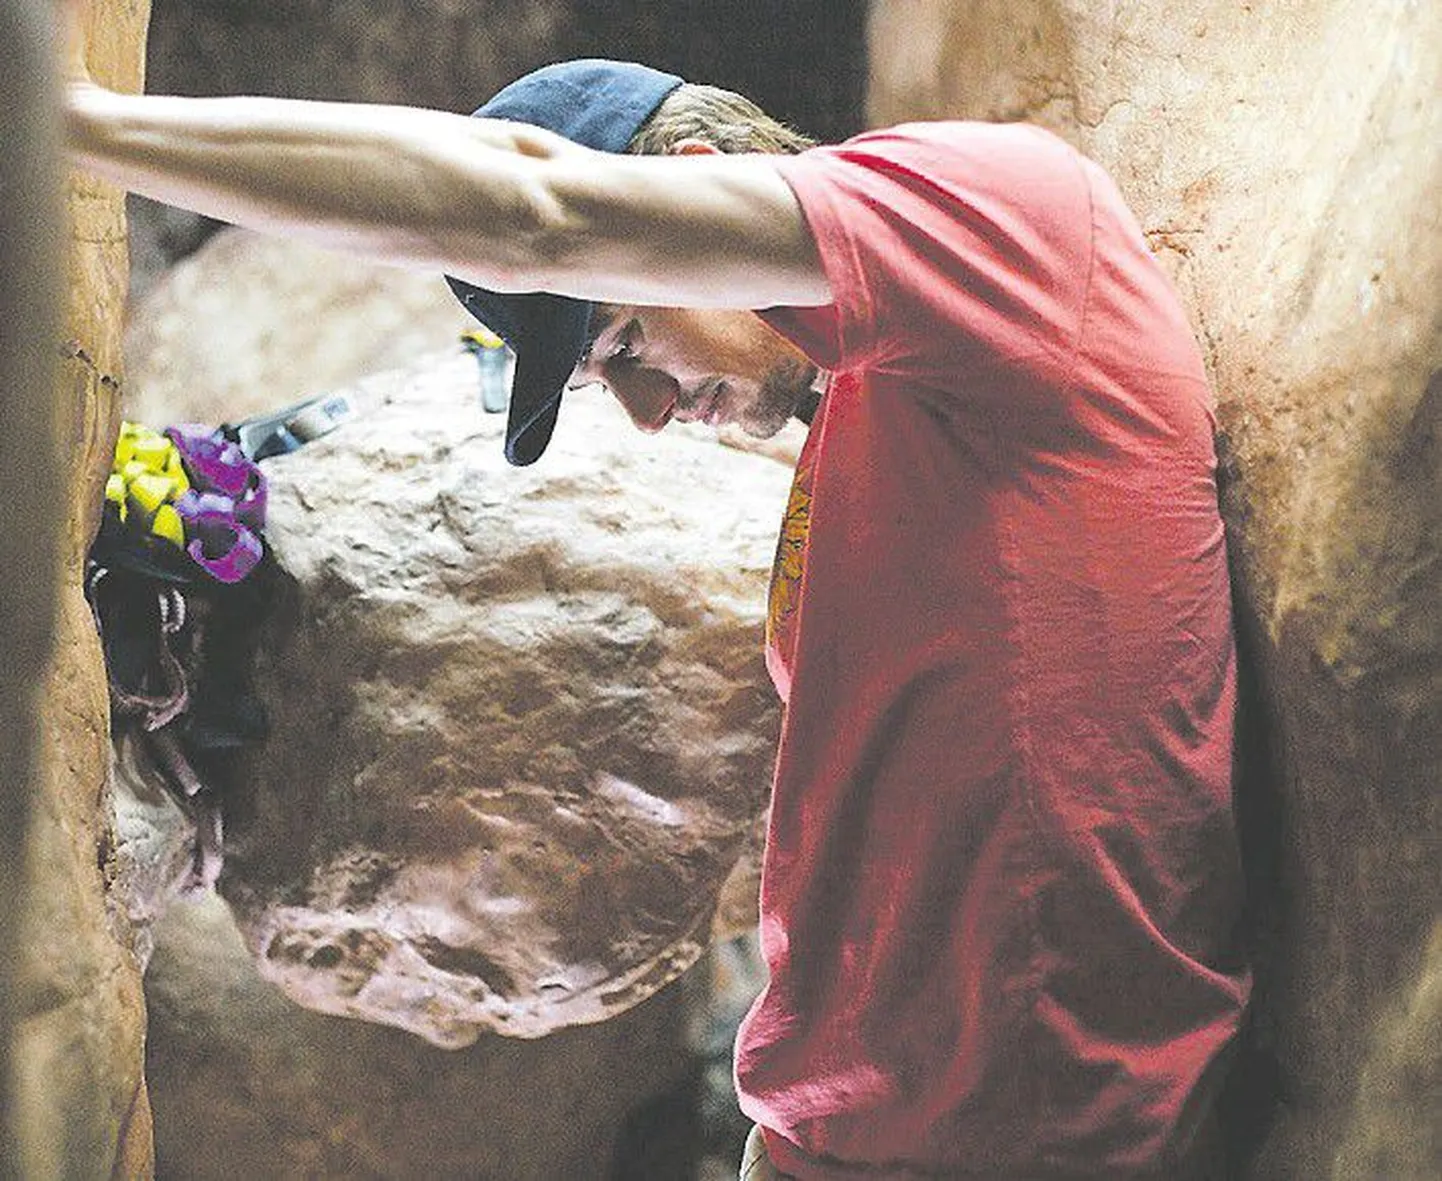 Проведя 127 часов в расщелине, с рукой, зажатой камнем, Арон Ральстон (Джеймс Франко) успел понять многое в жизни.